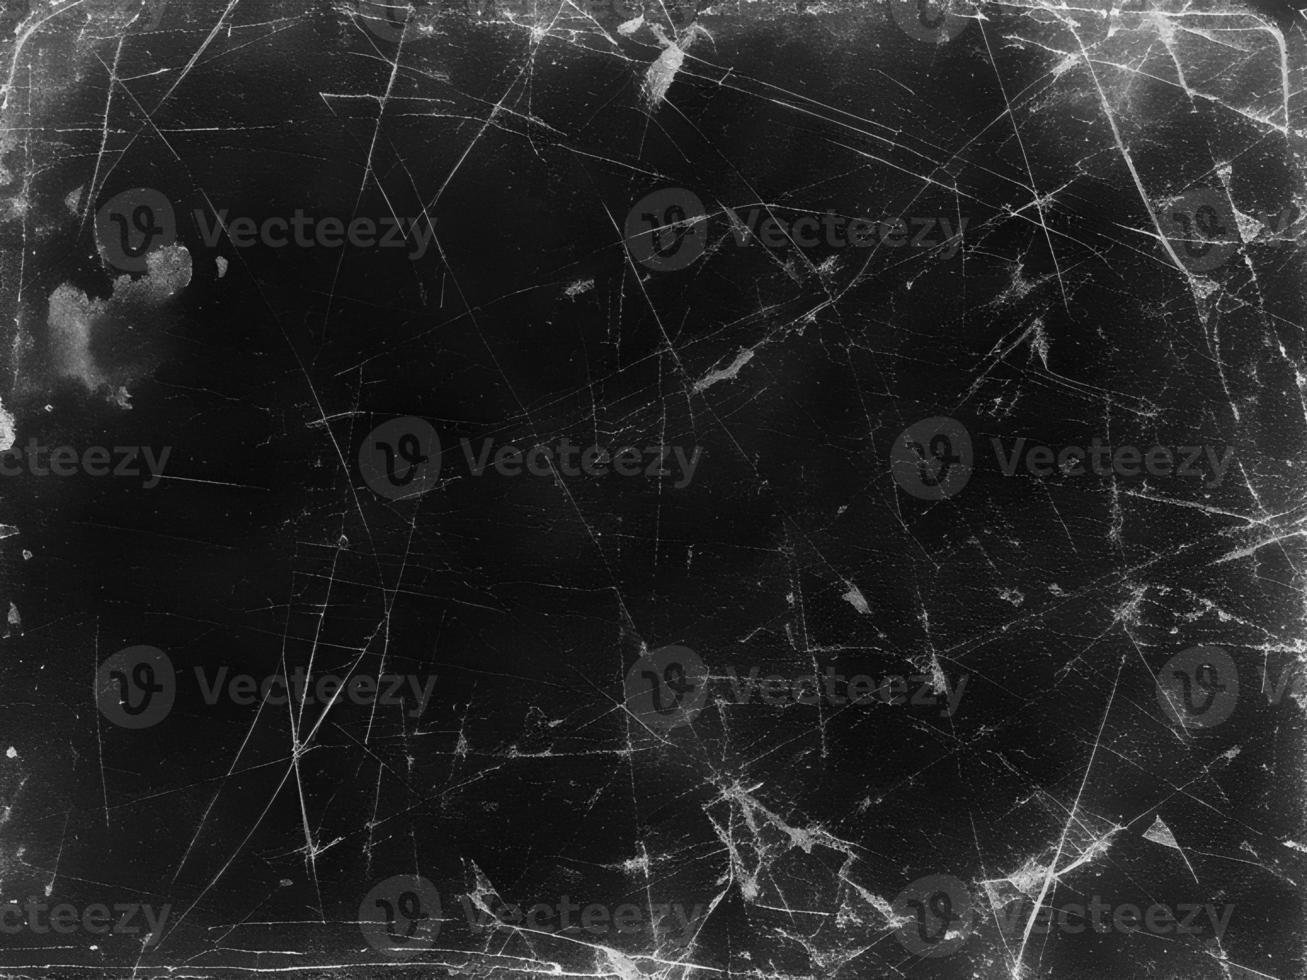 årgång svart repig grunge bakgrund med gammal filma effekt - abstrakt mörk textur för design och konst - retro bedrövad riden bärs eroderade förfall svartvit bakgrund foto